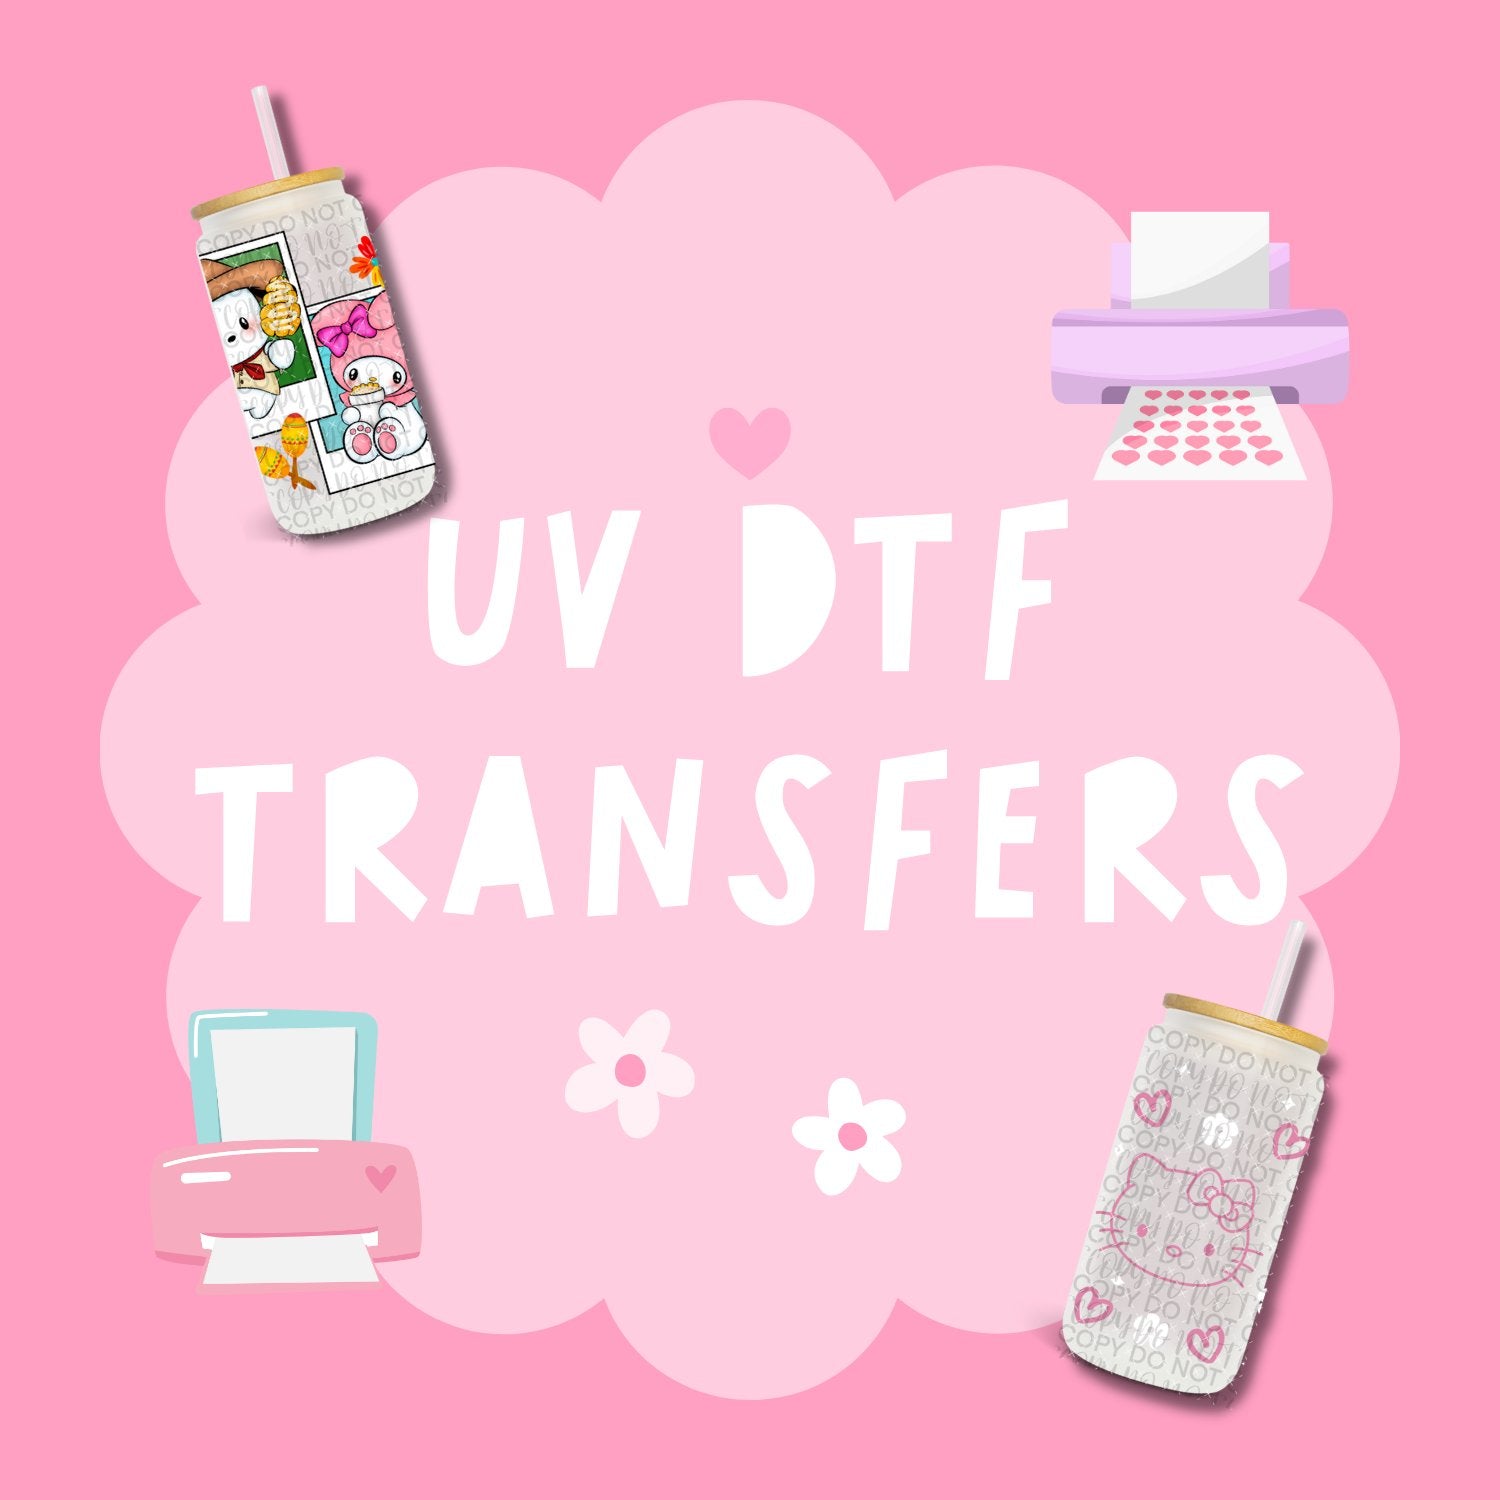 UV DTF TRANSFERS